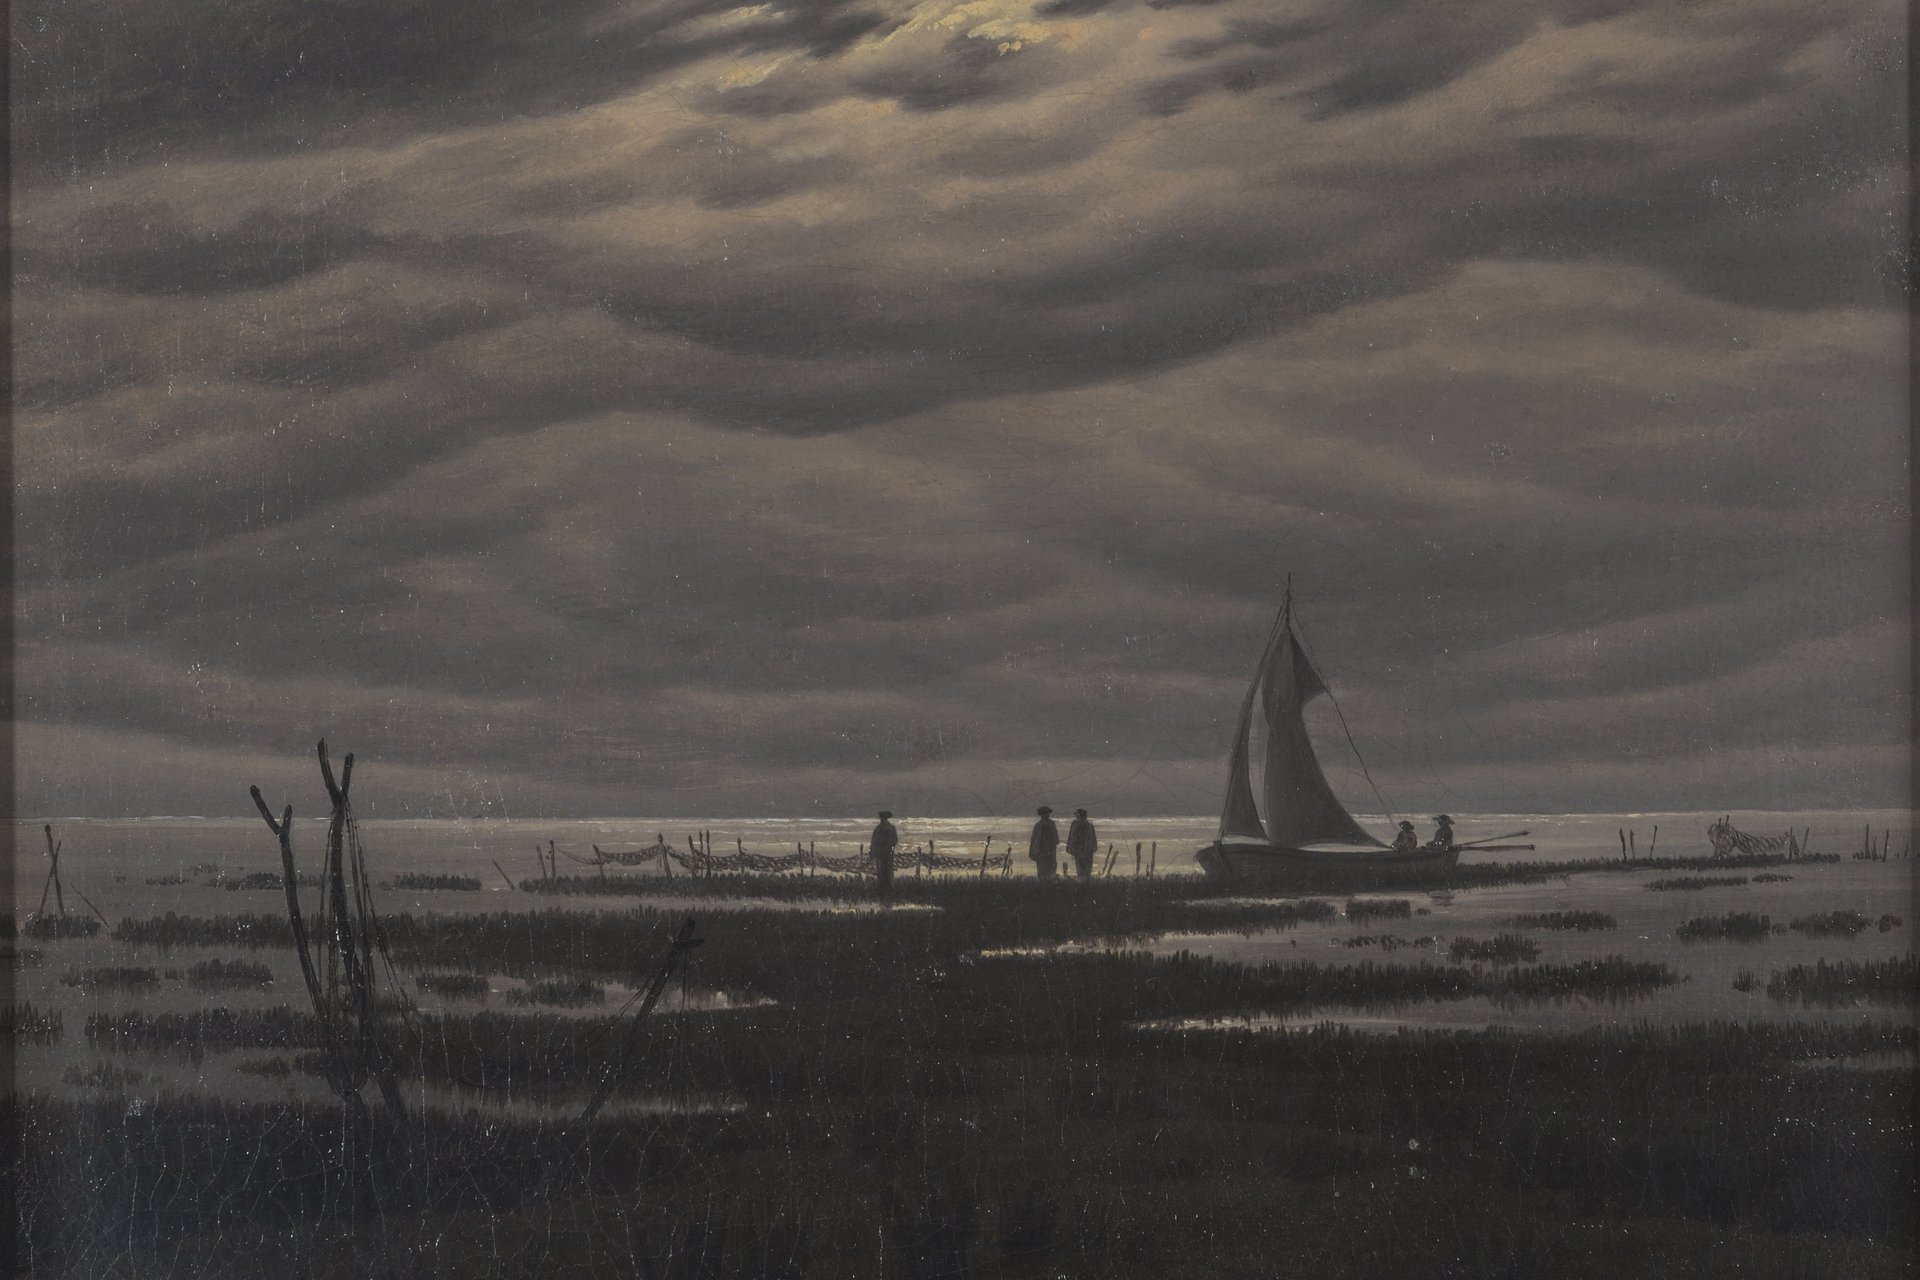 Gemälde: In blaugrauen, dunkler Farbgebung ein bewölkter Himmel in der oberen Bildhälfte. Fischernetze, Personen und ein Segelschiff in der Bildmitte. Im Vordergrund eine von Wasser durchbrochene dunkle Graslandschaft.